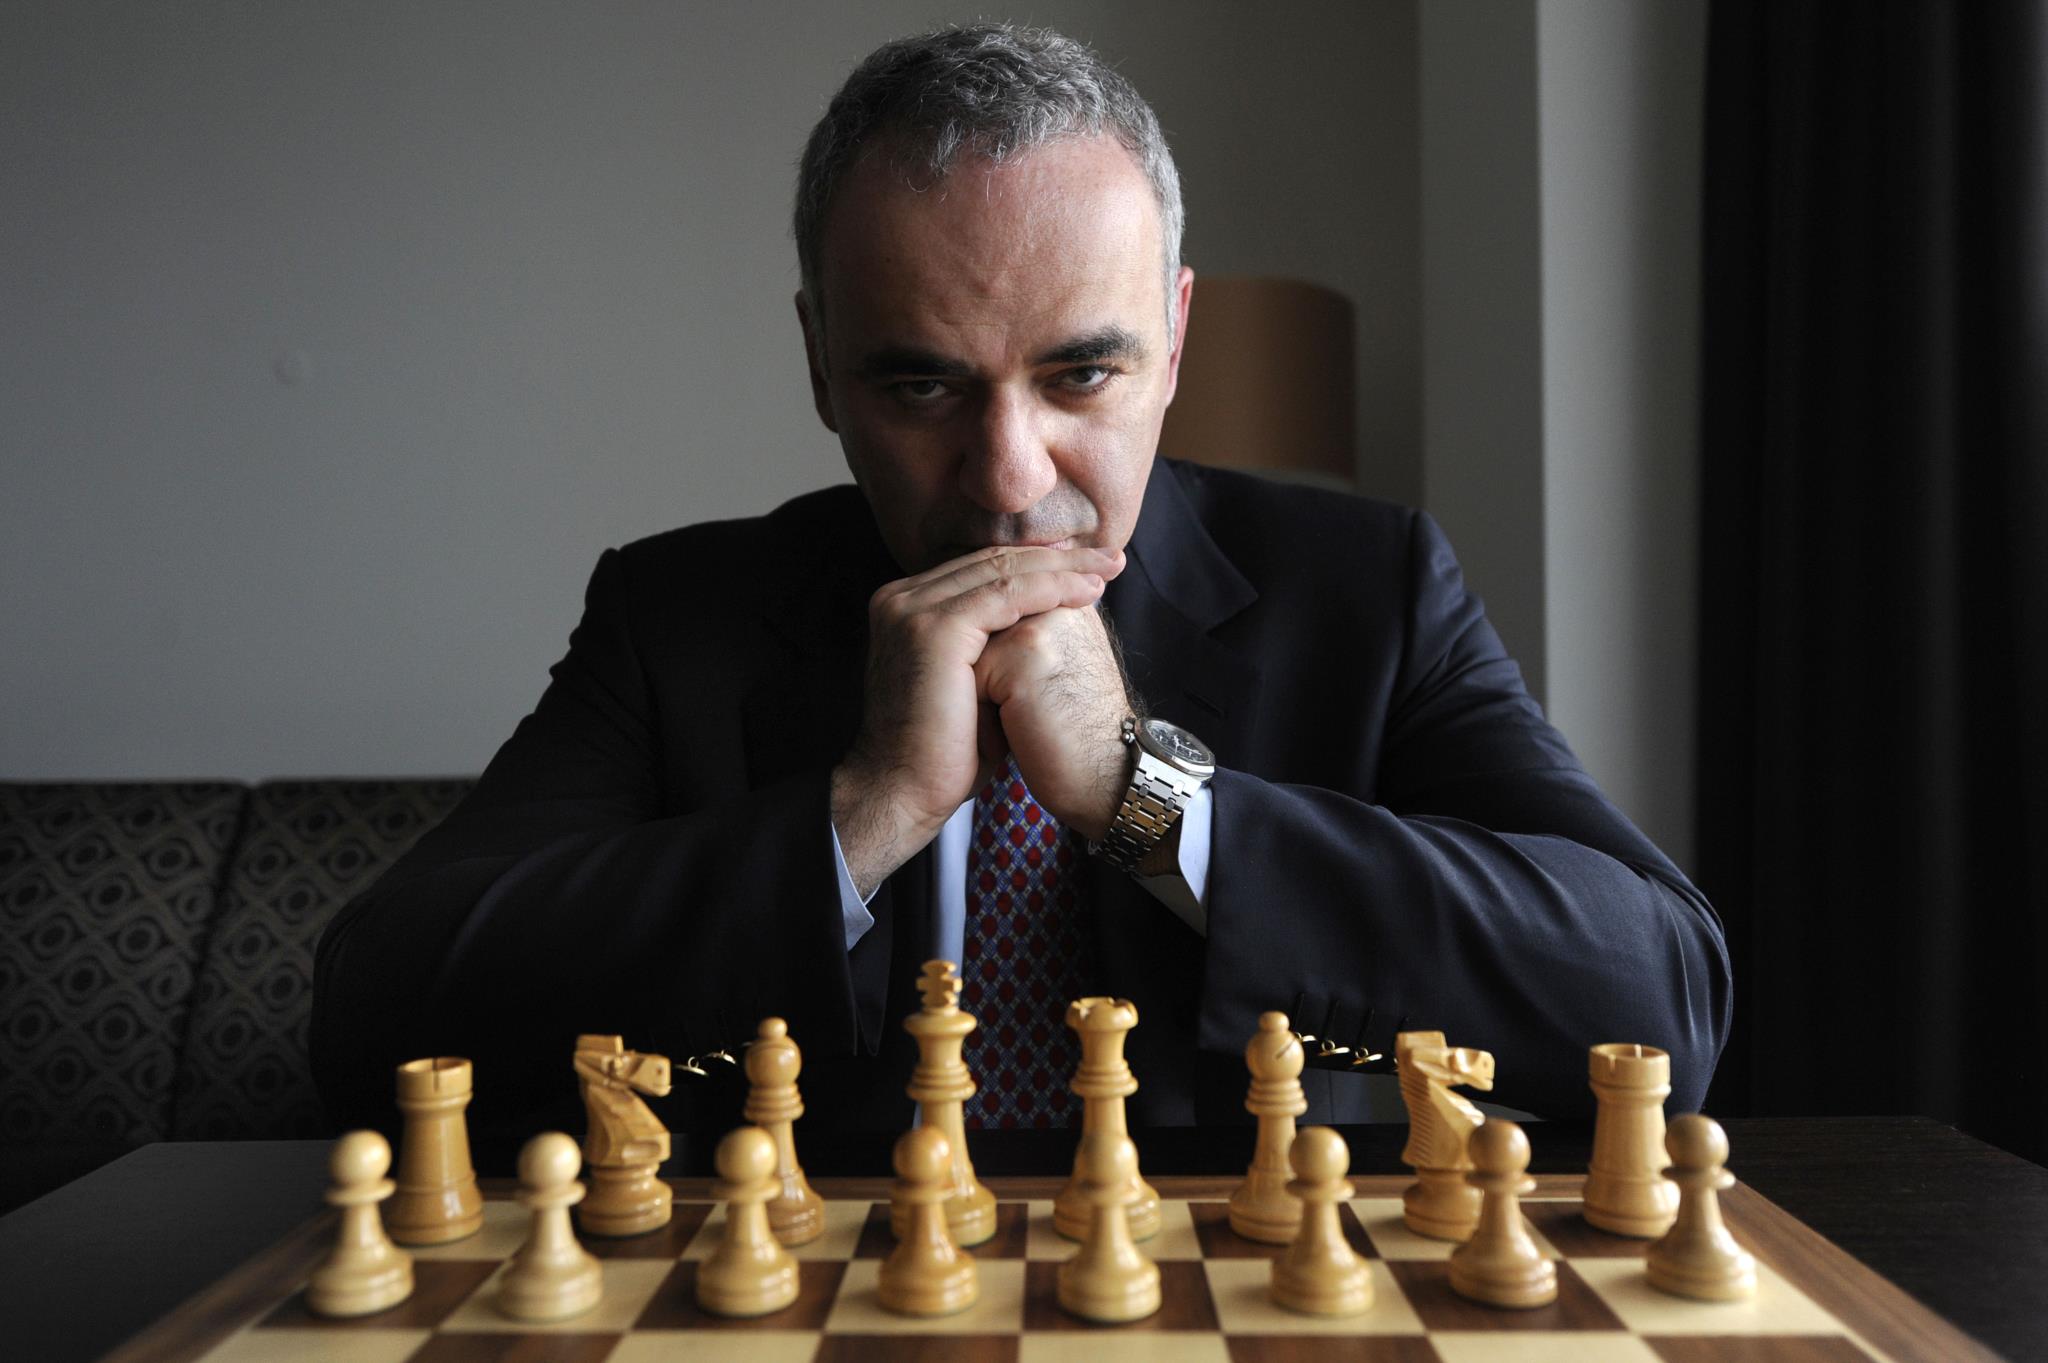 Sergey Karjakin  Melhores Jogadores de Xadrez 